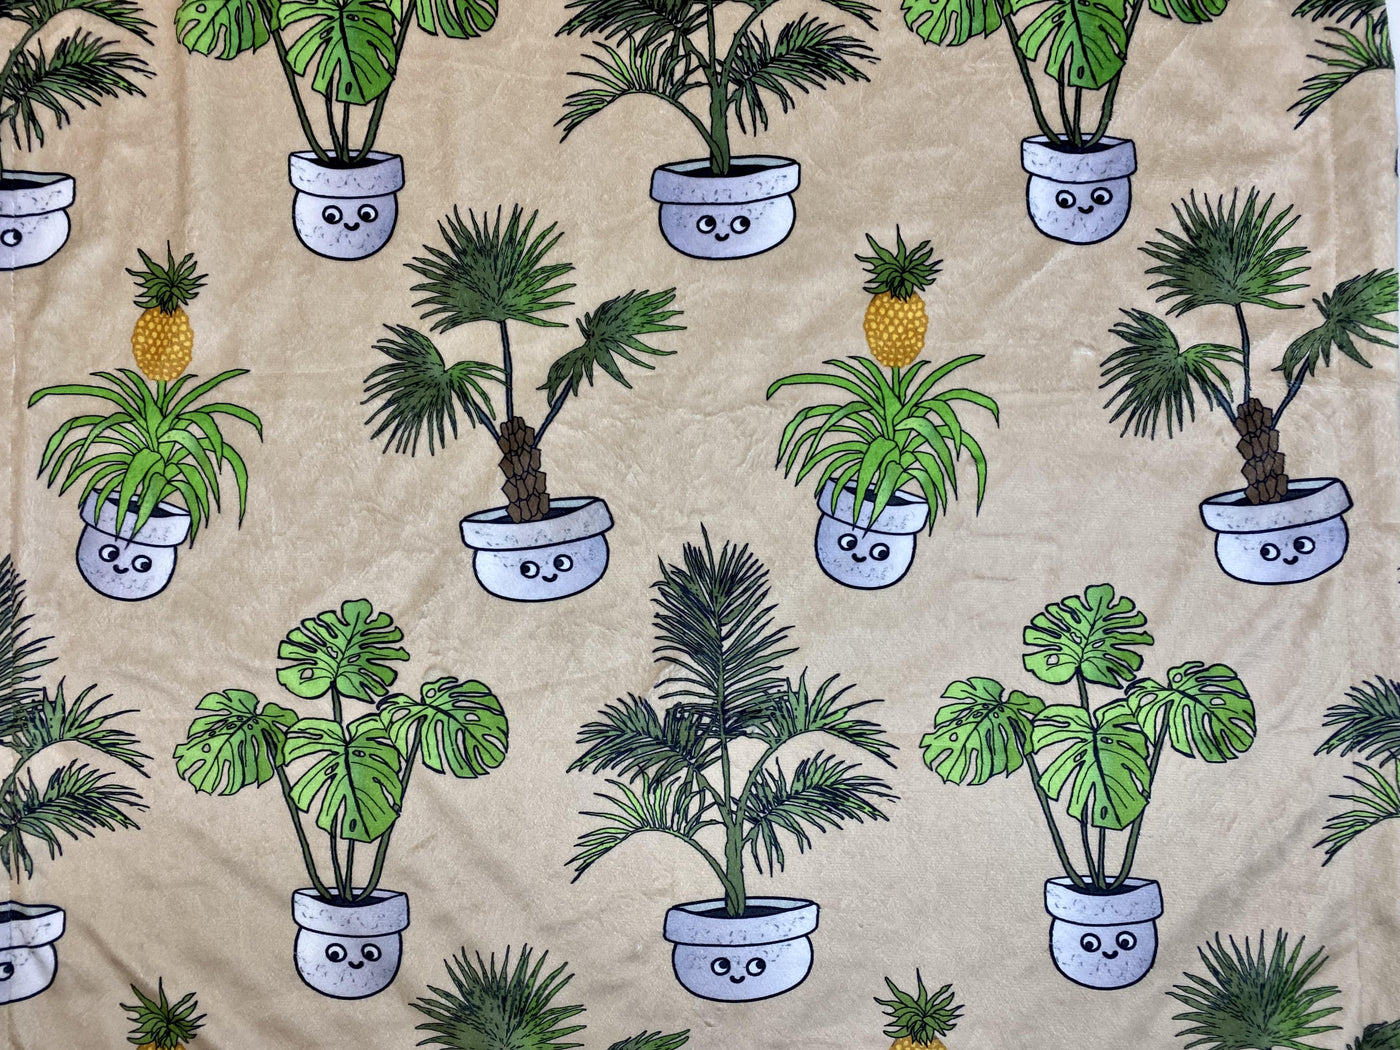 Couverture de bébé : Collection du jardin botanique heureux: plantes d’ananas, monstera et compagnie